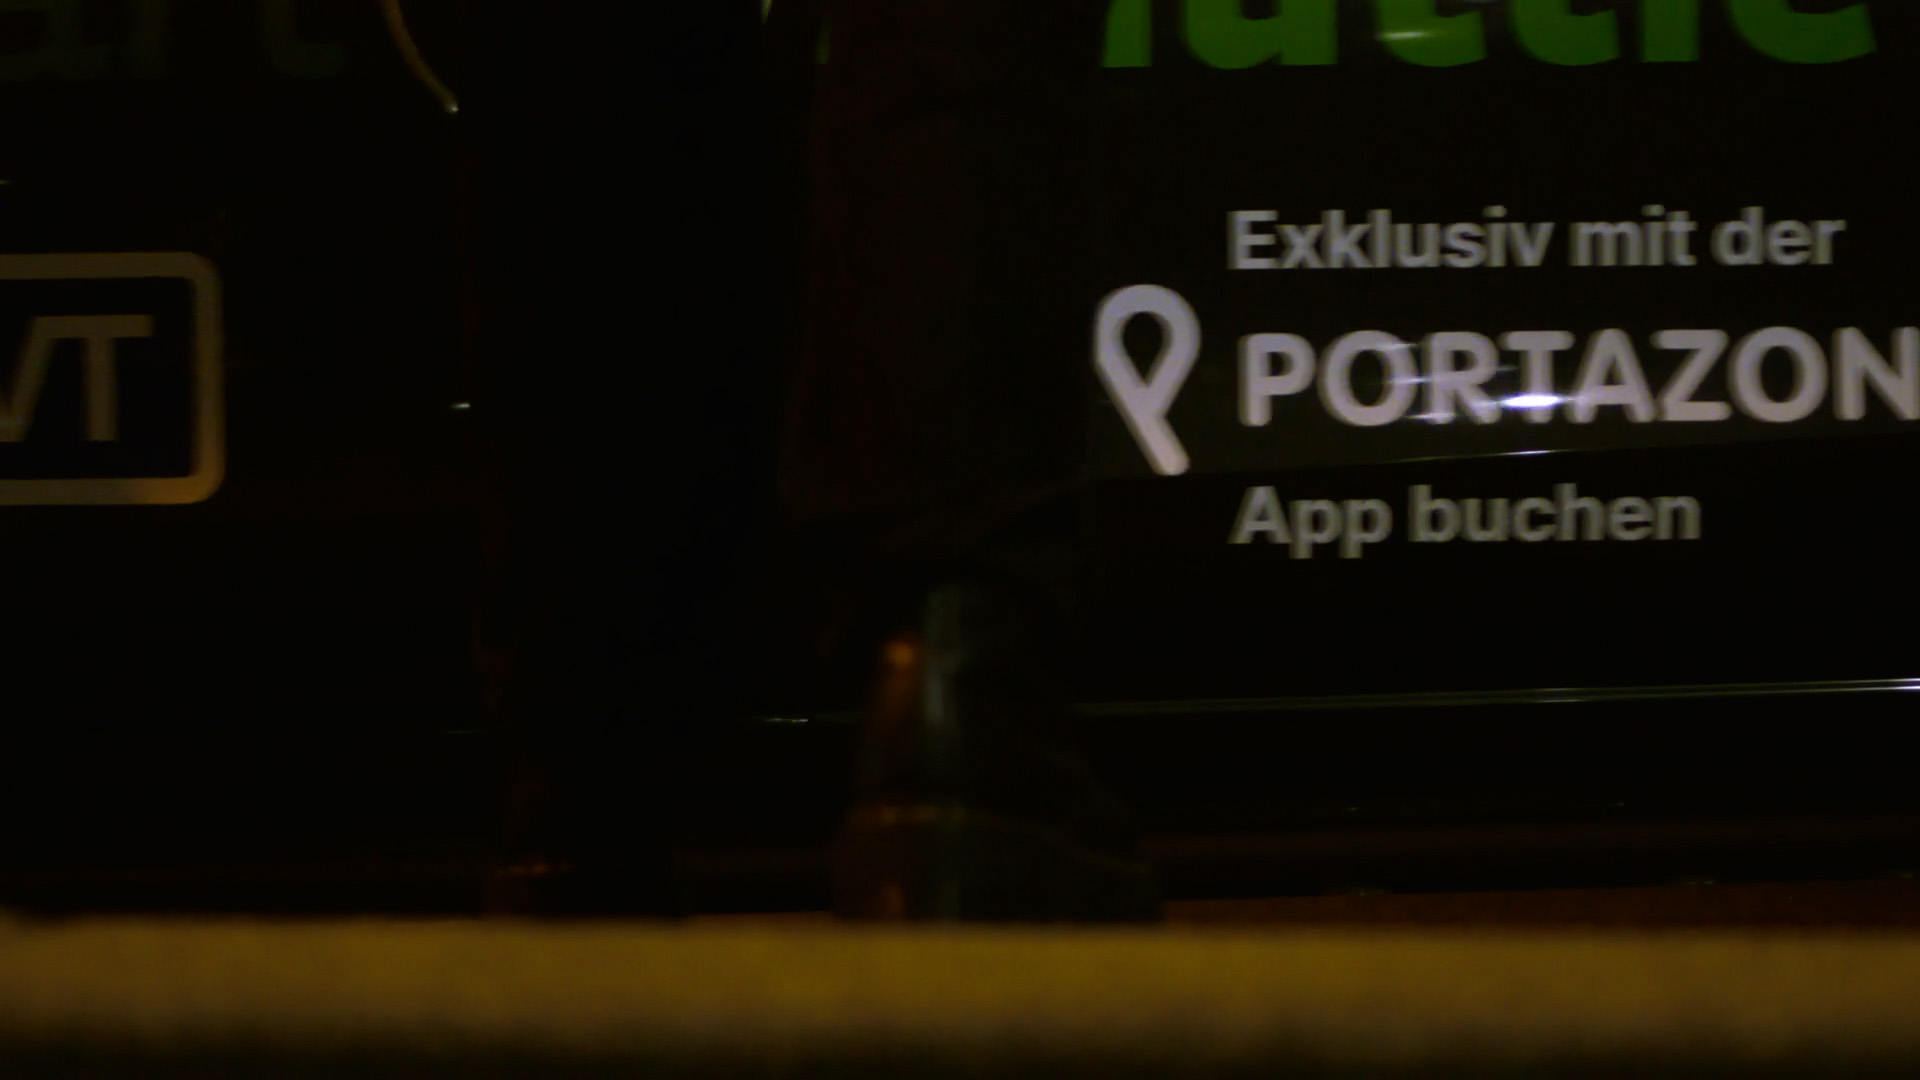 Portazon App - Dein smart Shuttle